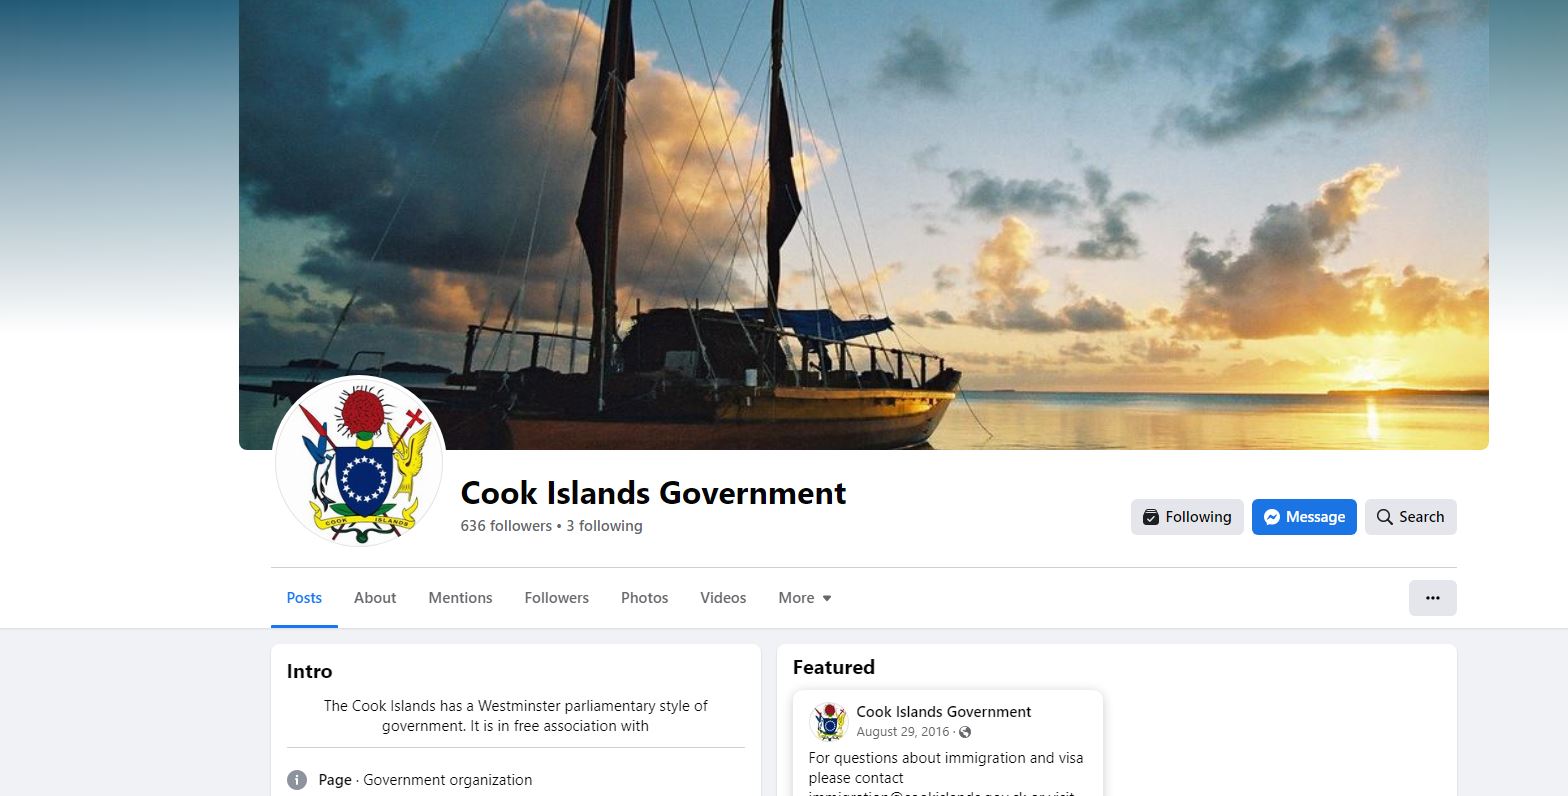 Facebook page using Cook Islands govt emblem  active since  2012: Hilyard